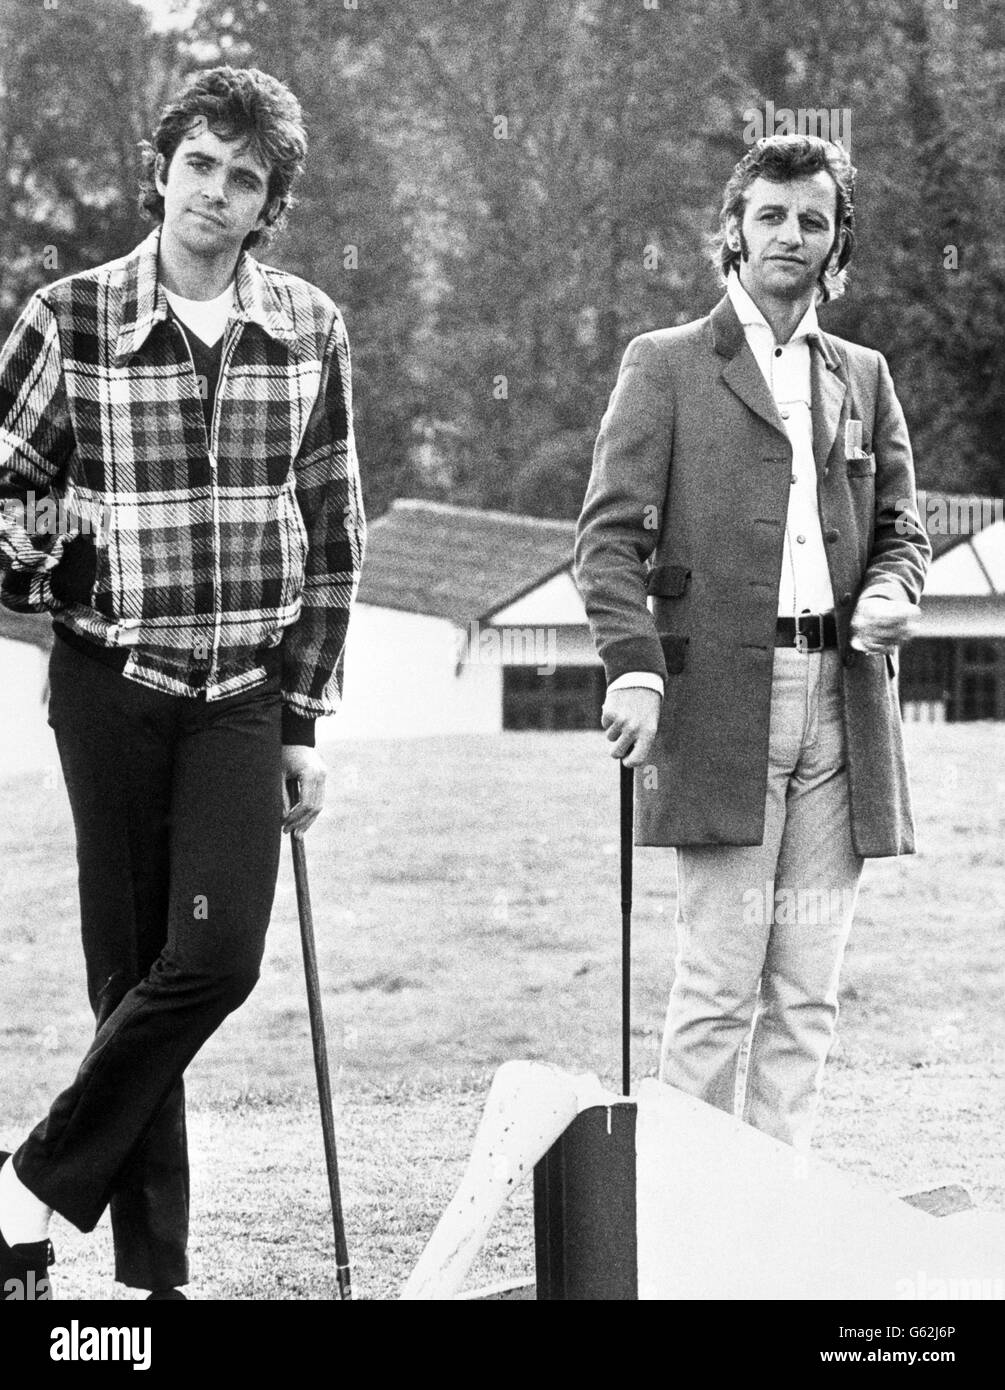 Musiciens-devenus-acteurs David Essex et Ringo Starr dans une scène du film qui sera le jour. Ils jouent aux anti-héros Jim et Mike, qui sont à la gestion d'un camp de vacances et qui apprécient les clients qui changent rapidement. Banque D'Images